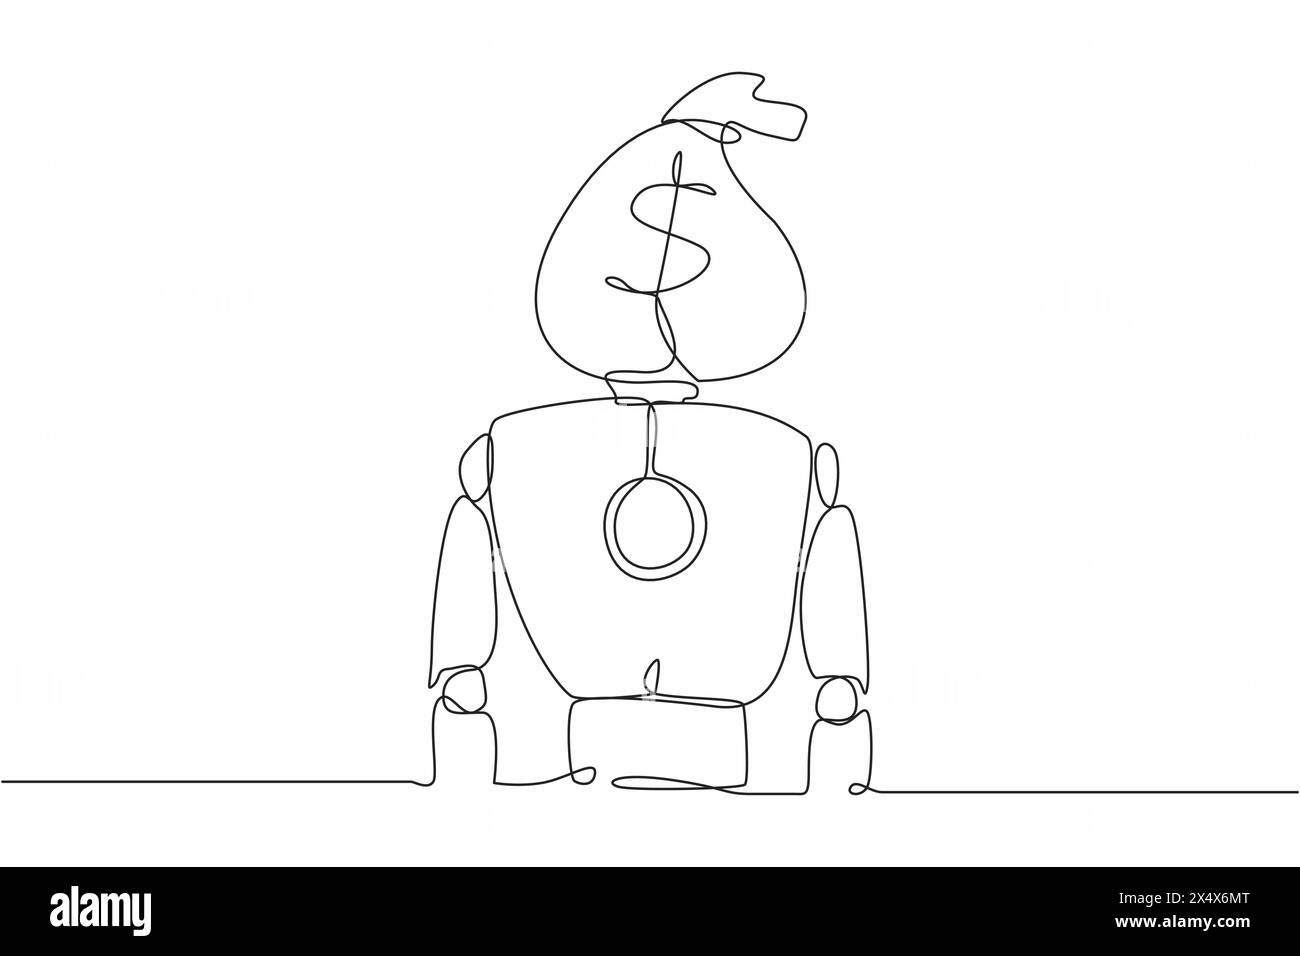 Robot de dessin simple à une ligne avec sac d'argent au lieu de la tête. Développement technologique futur. Intelligence artificielle et processus d'apprentissage automatique. CON Illustration de Vecteur